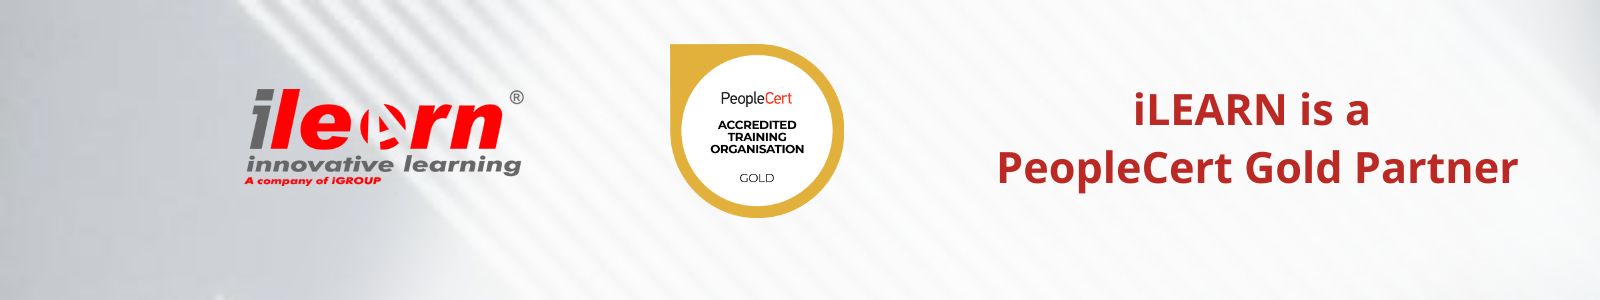 PeopleCert Gold Partner